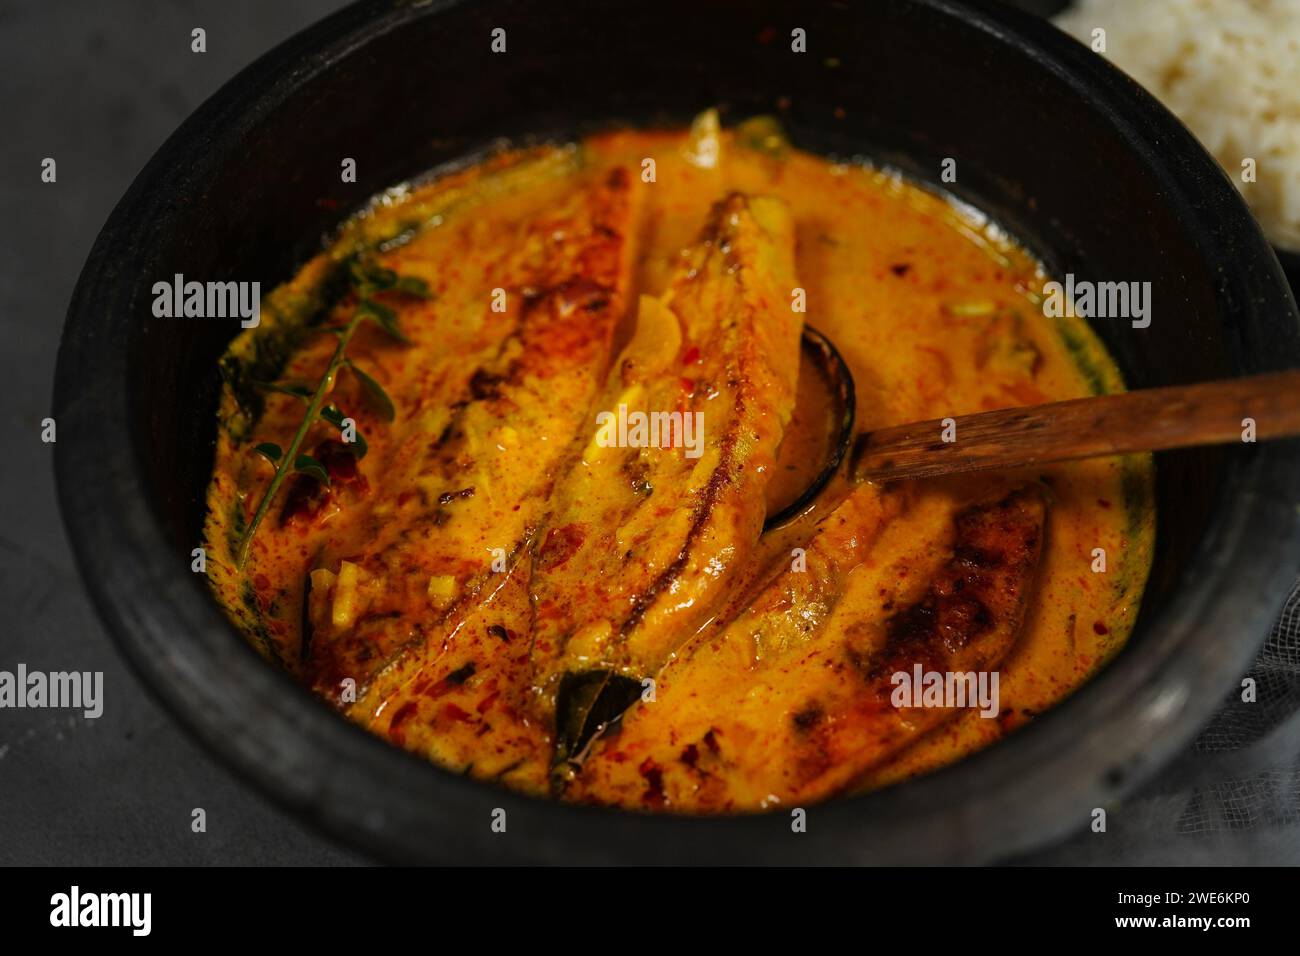 Molea di pesce di Kerala fatto in casa - Molly servita con riso bollito, fuoco selettivo | curry di pesce Pmpano dell'India meridionale Foto Stock